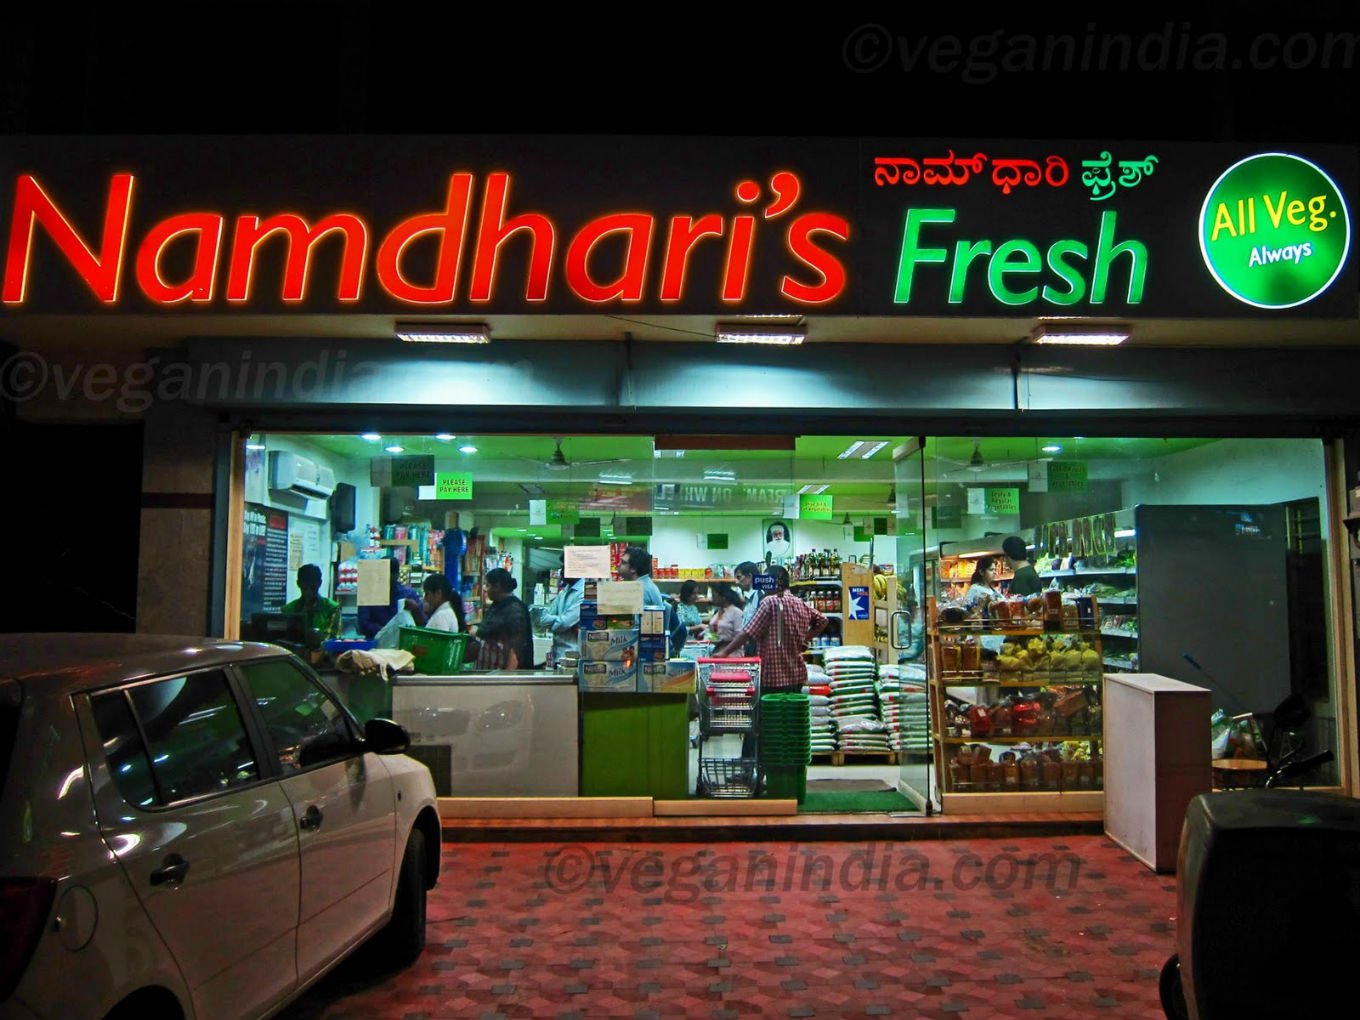 Flipkart May Acquire Bengaluru-Based Grocery Chain Namdhari: Report